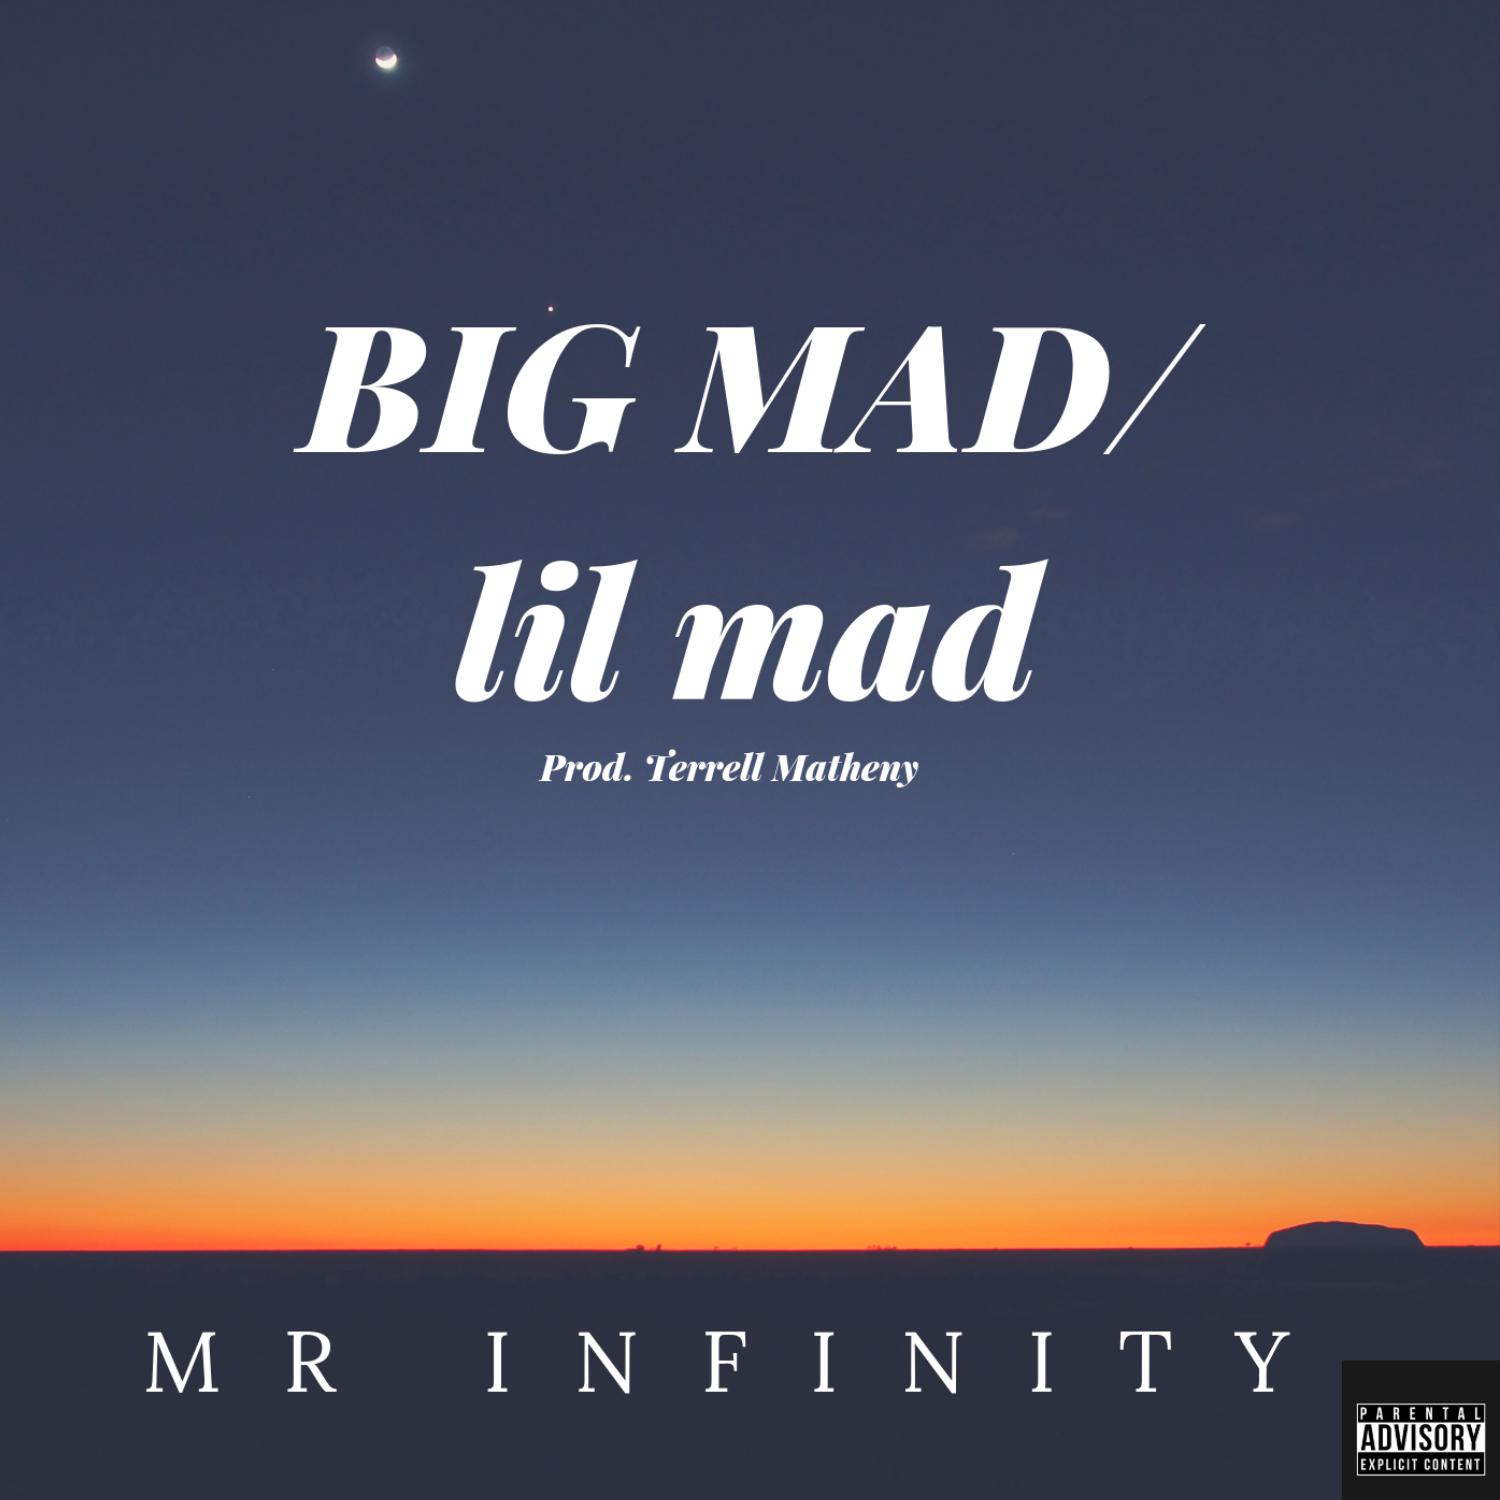 Big Mad / Lil Mad